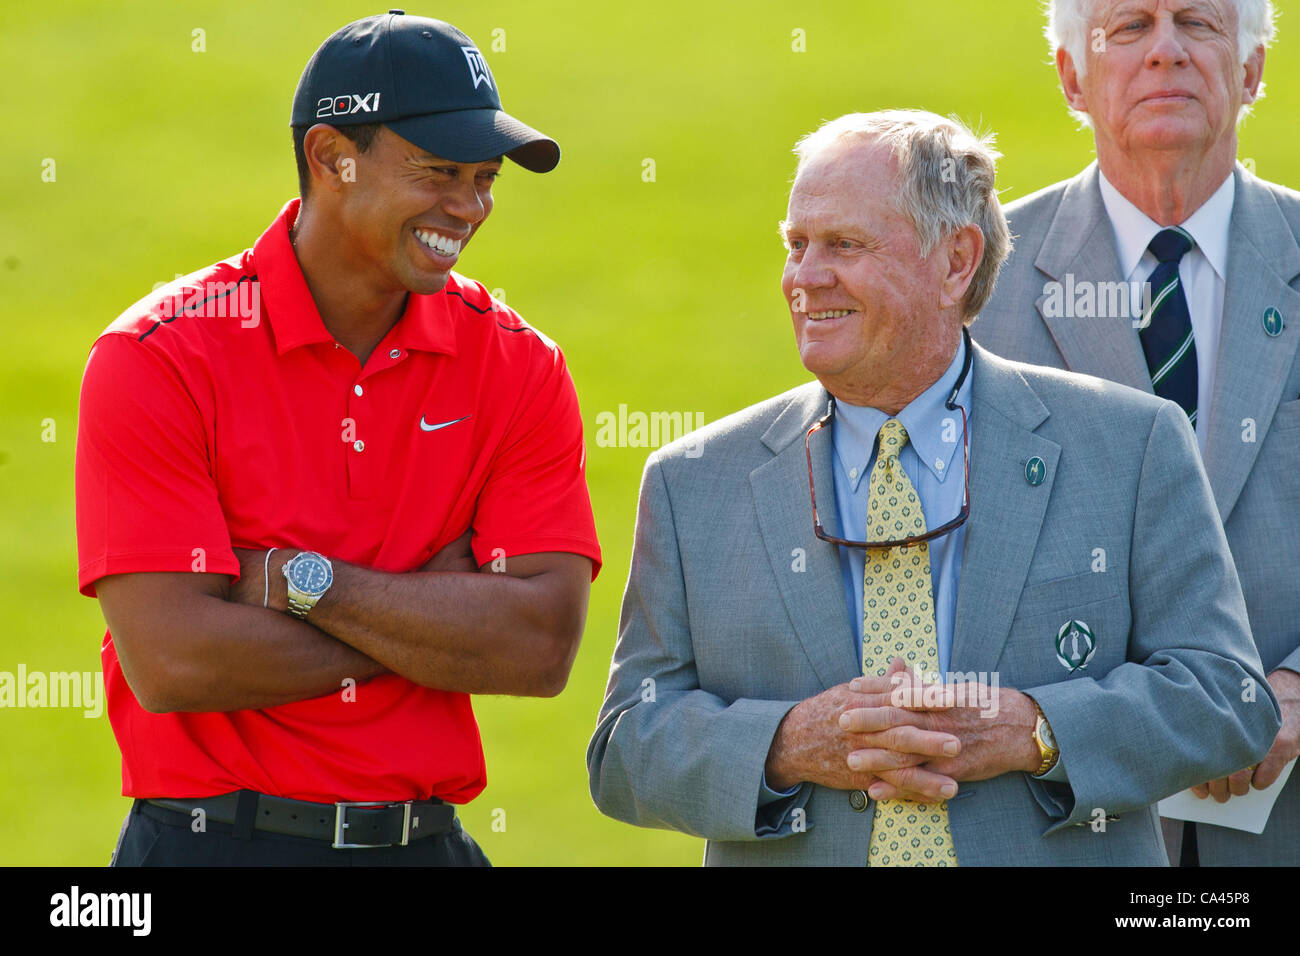 Giugno 03, 2012: Tiger Woods e Jack Nicklaus condividere una risata durante la cerimonia di premiazione per il Memorial Golf Tournament giocato a Muirfield Village Golf Club in Dublin, Ohio. Foto Stock